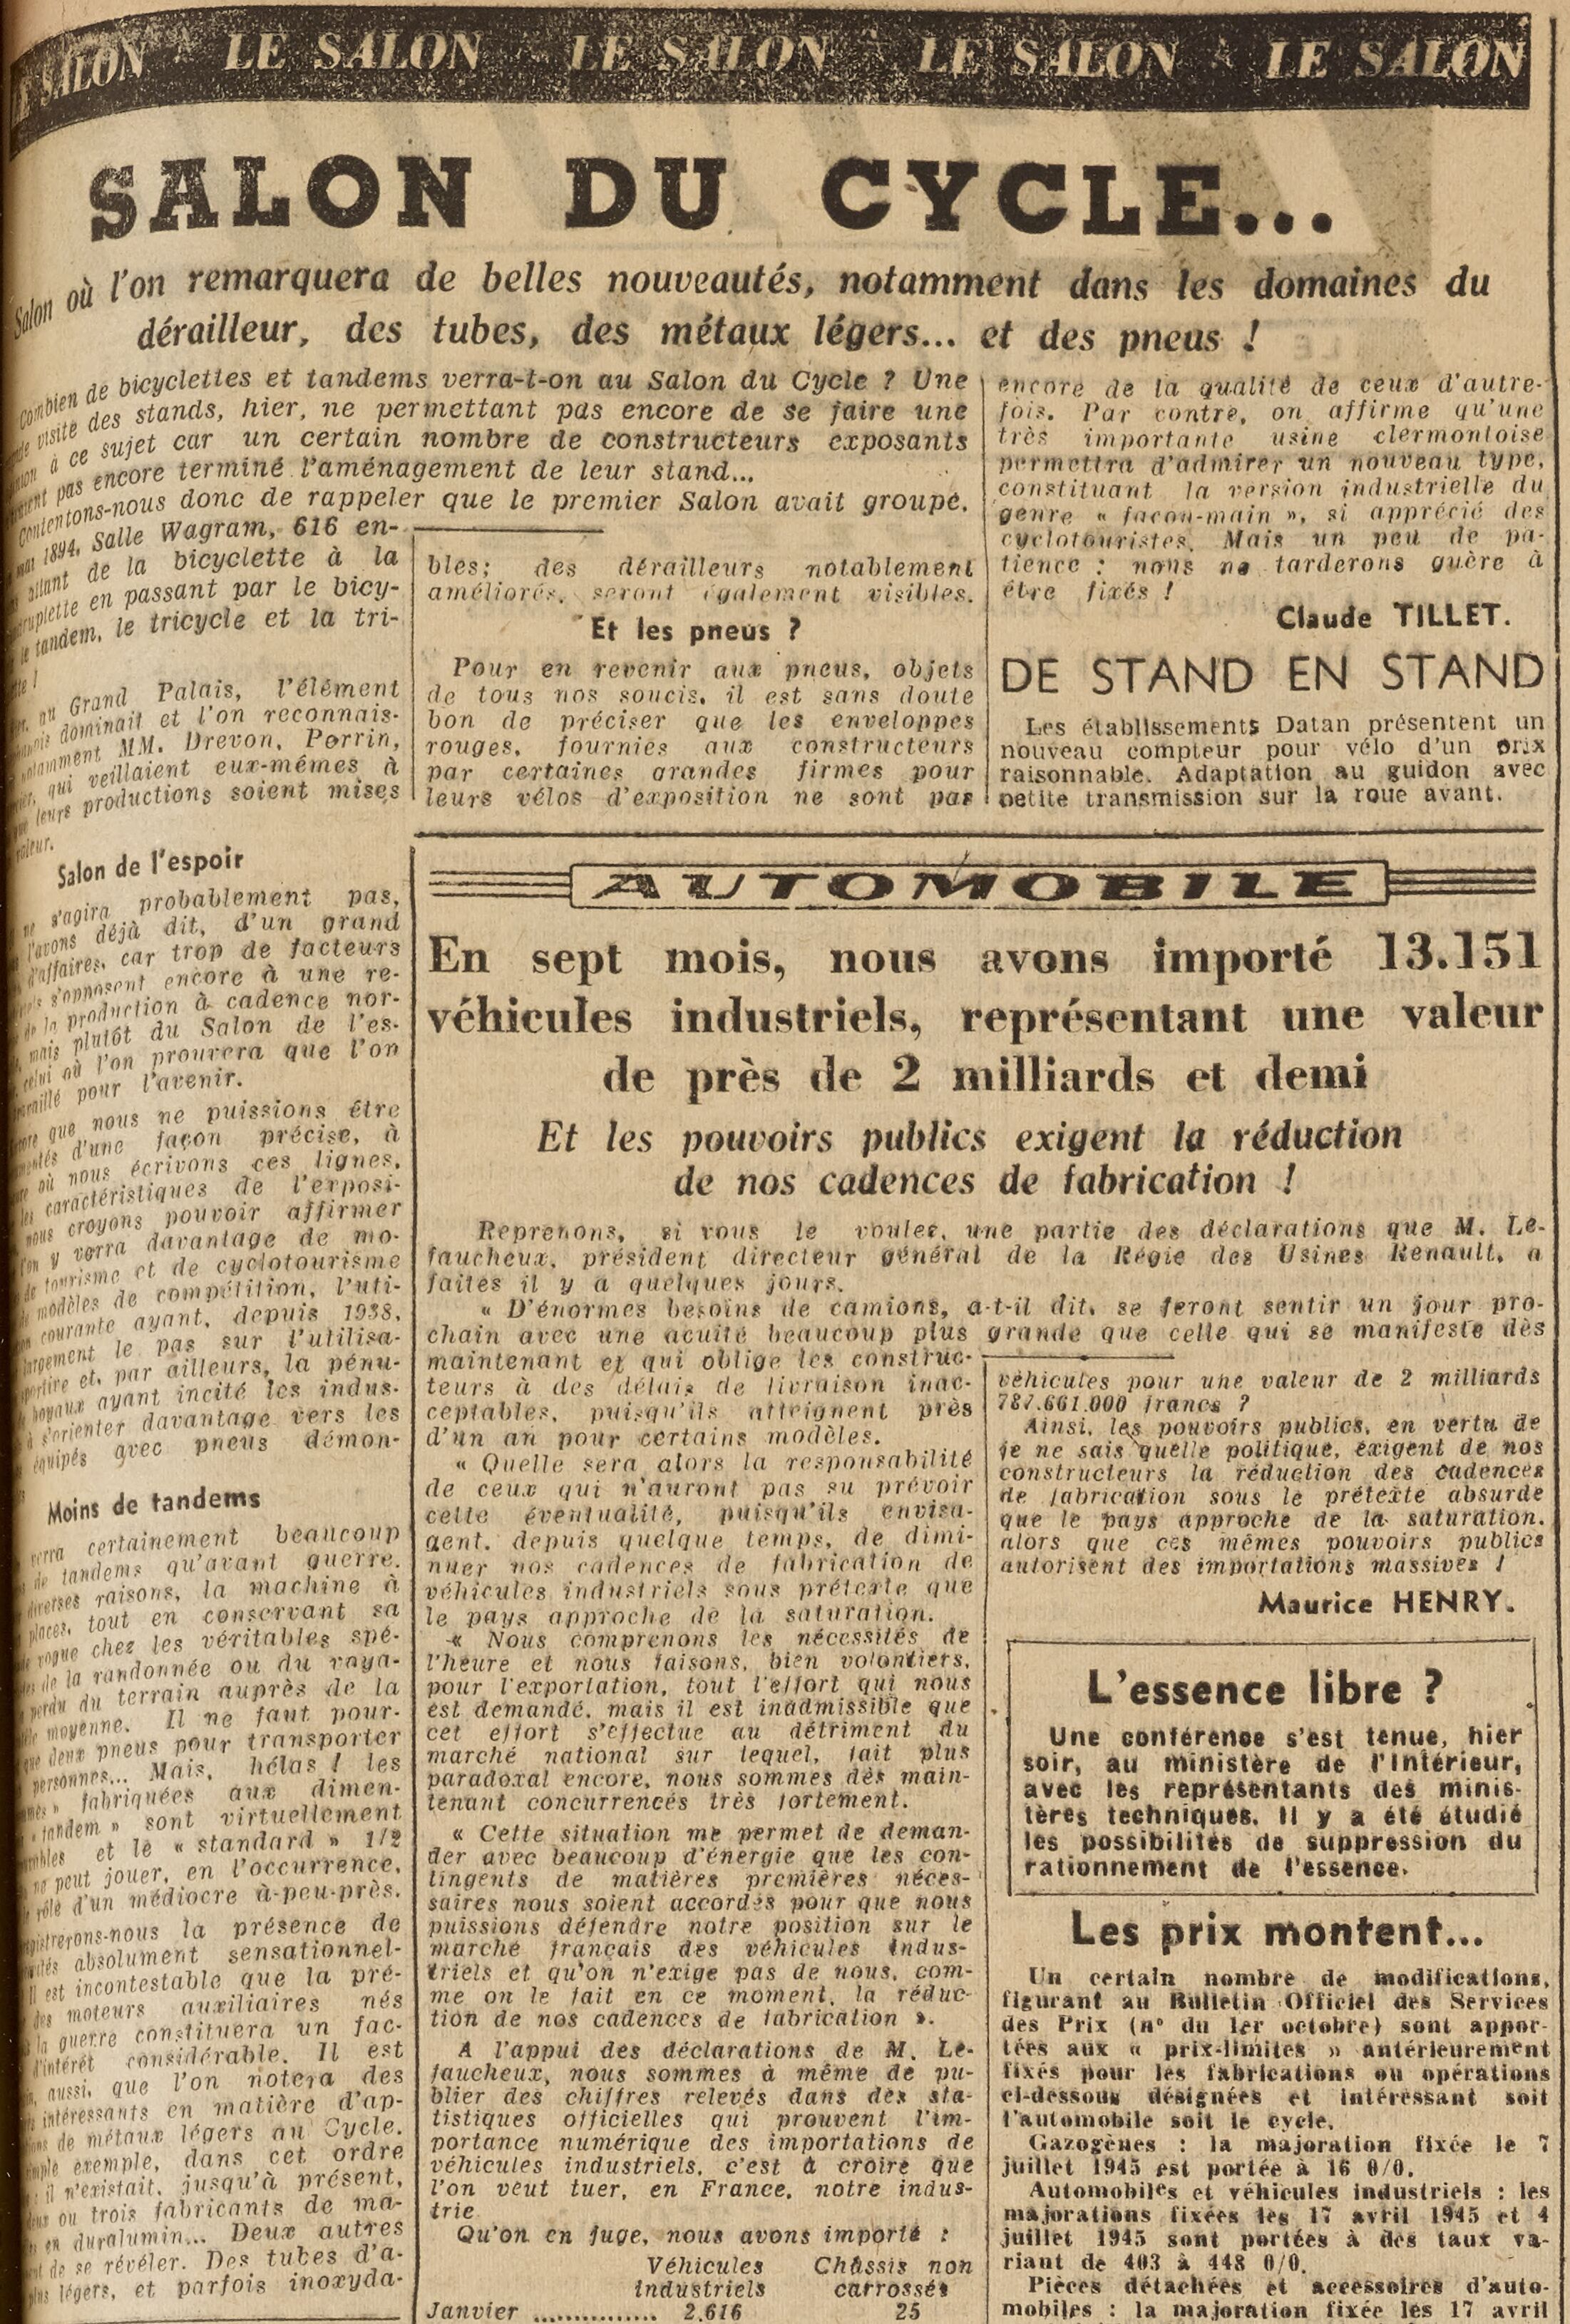 Salon du Cycle octobre 1946, Paris, le Grand Palais - L'Equipe - Cyclo Magazine 230214051519721918112006